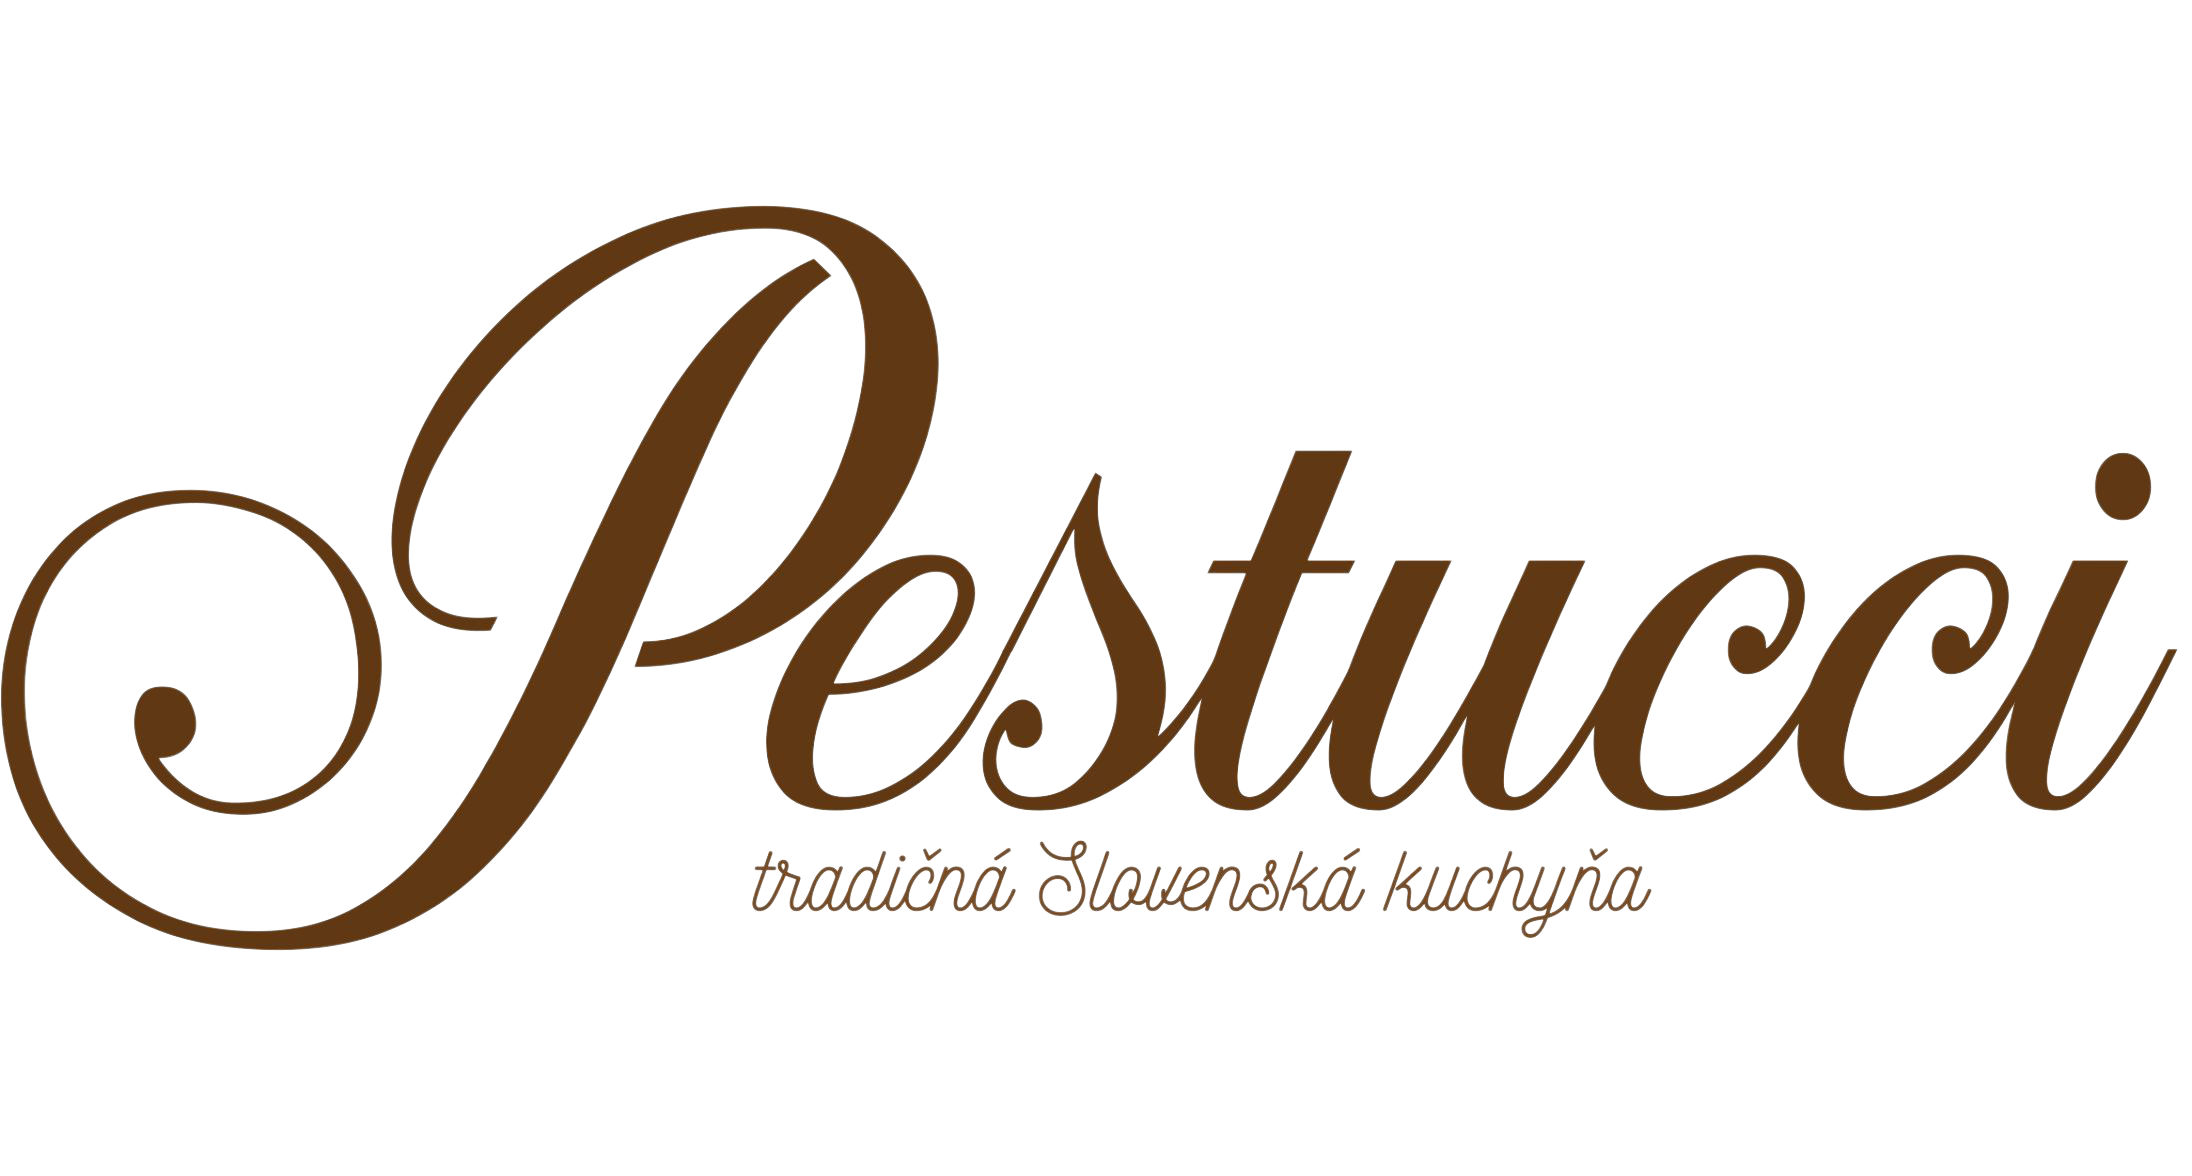 Pestucci logo